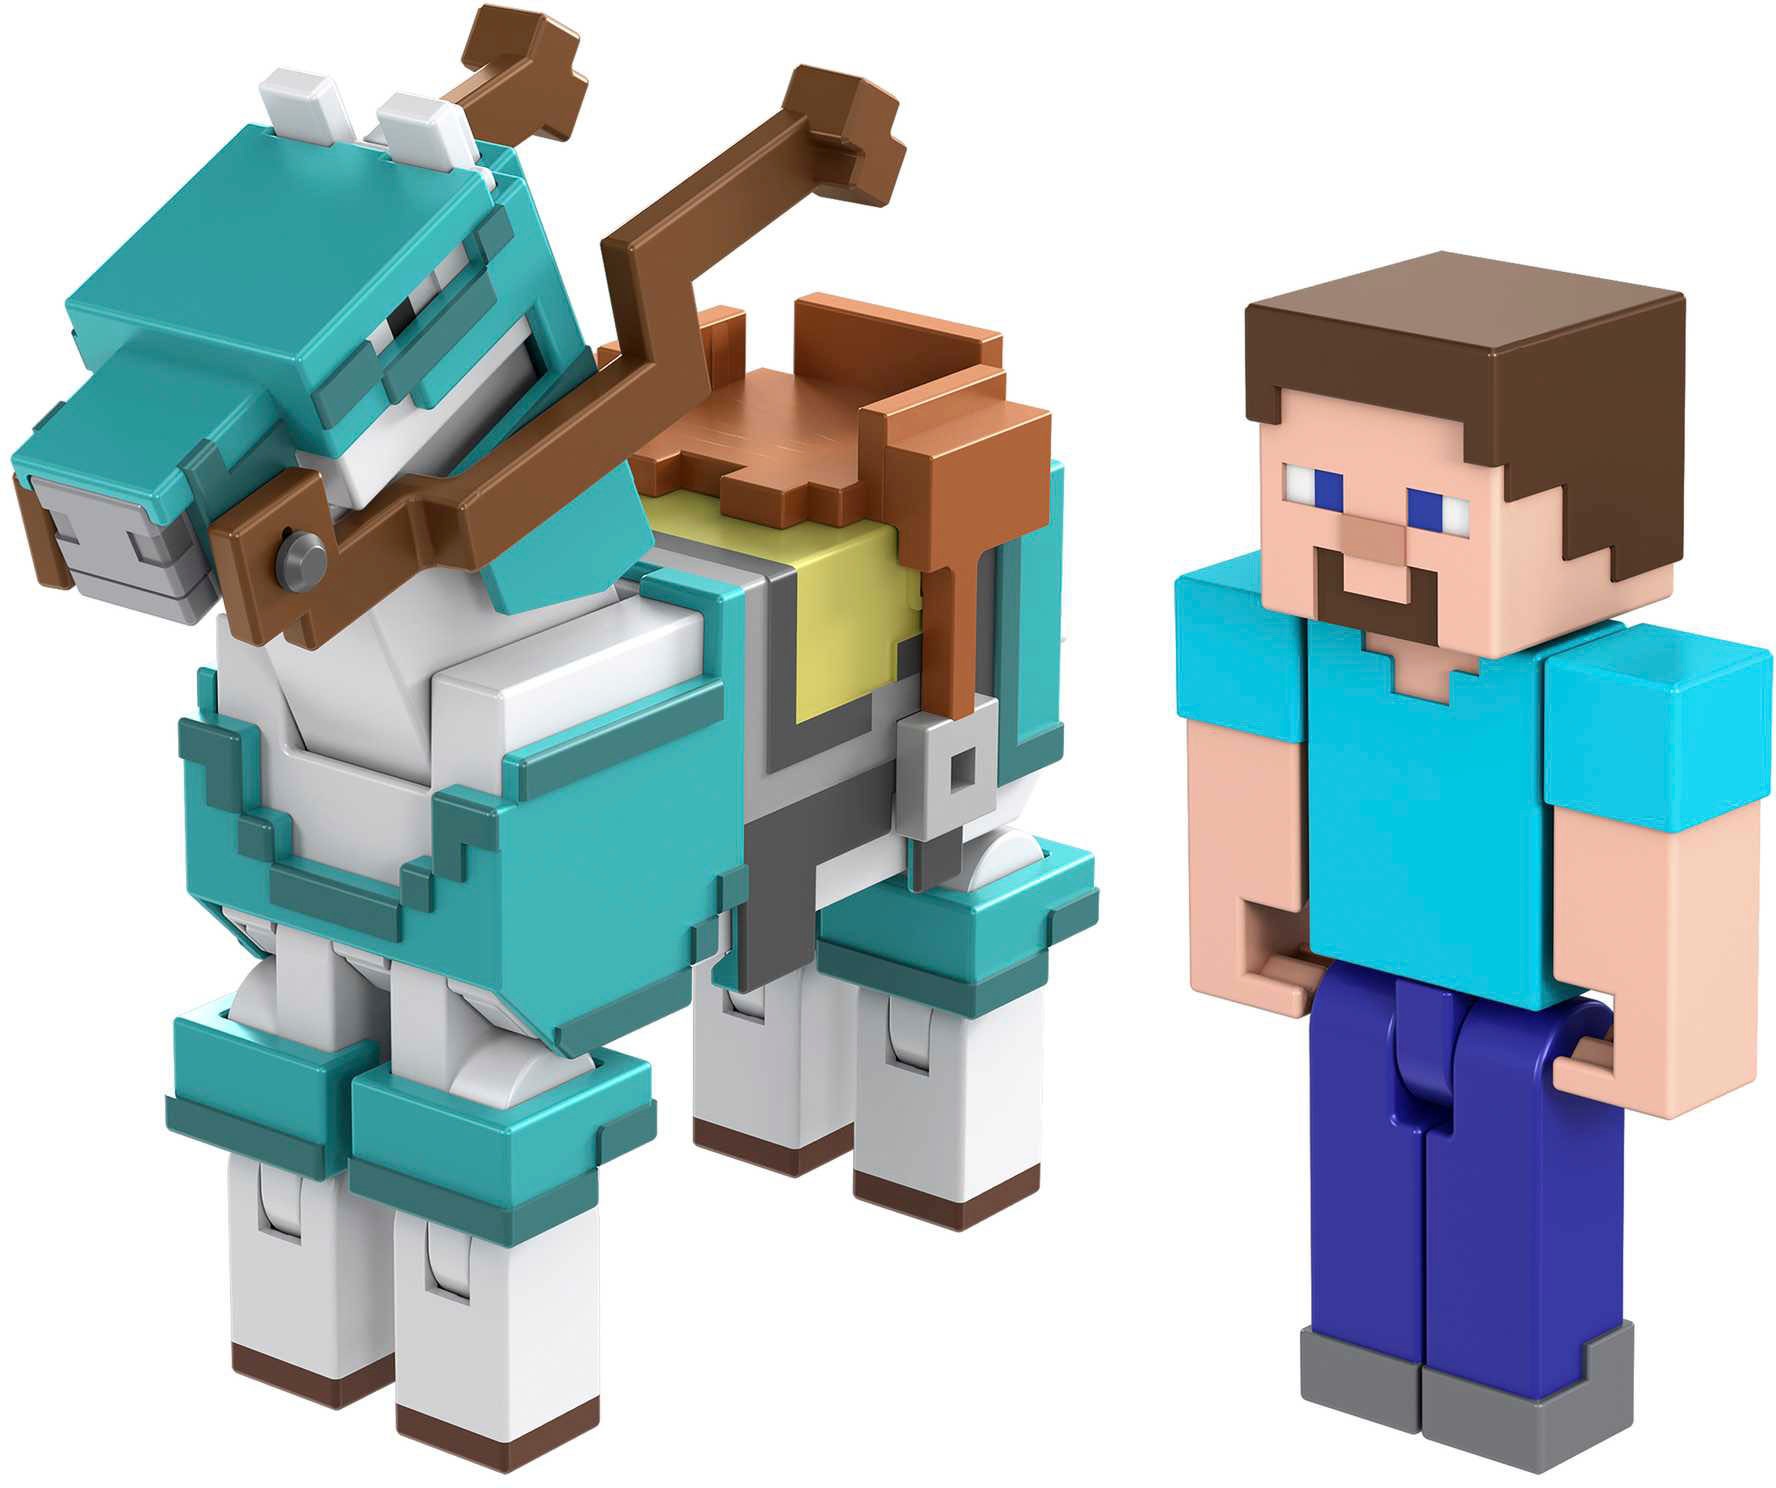 Mattel® Spielfigur »Minecraft, Armored Horse and Steve«